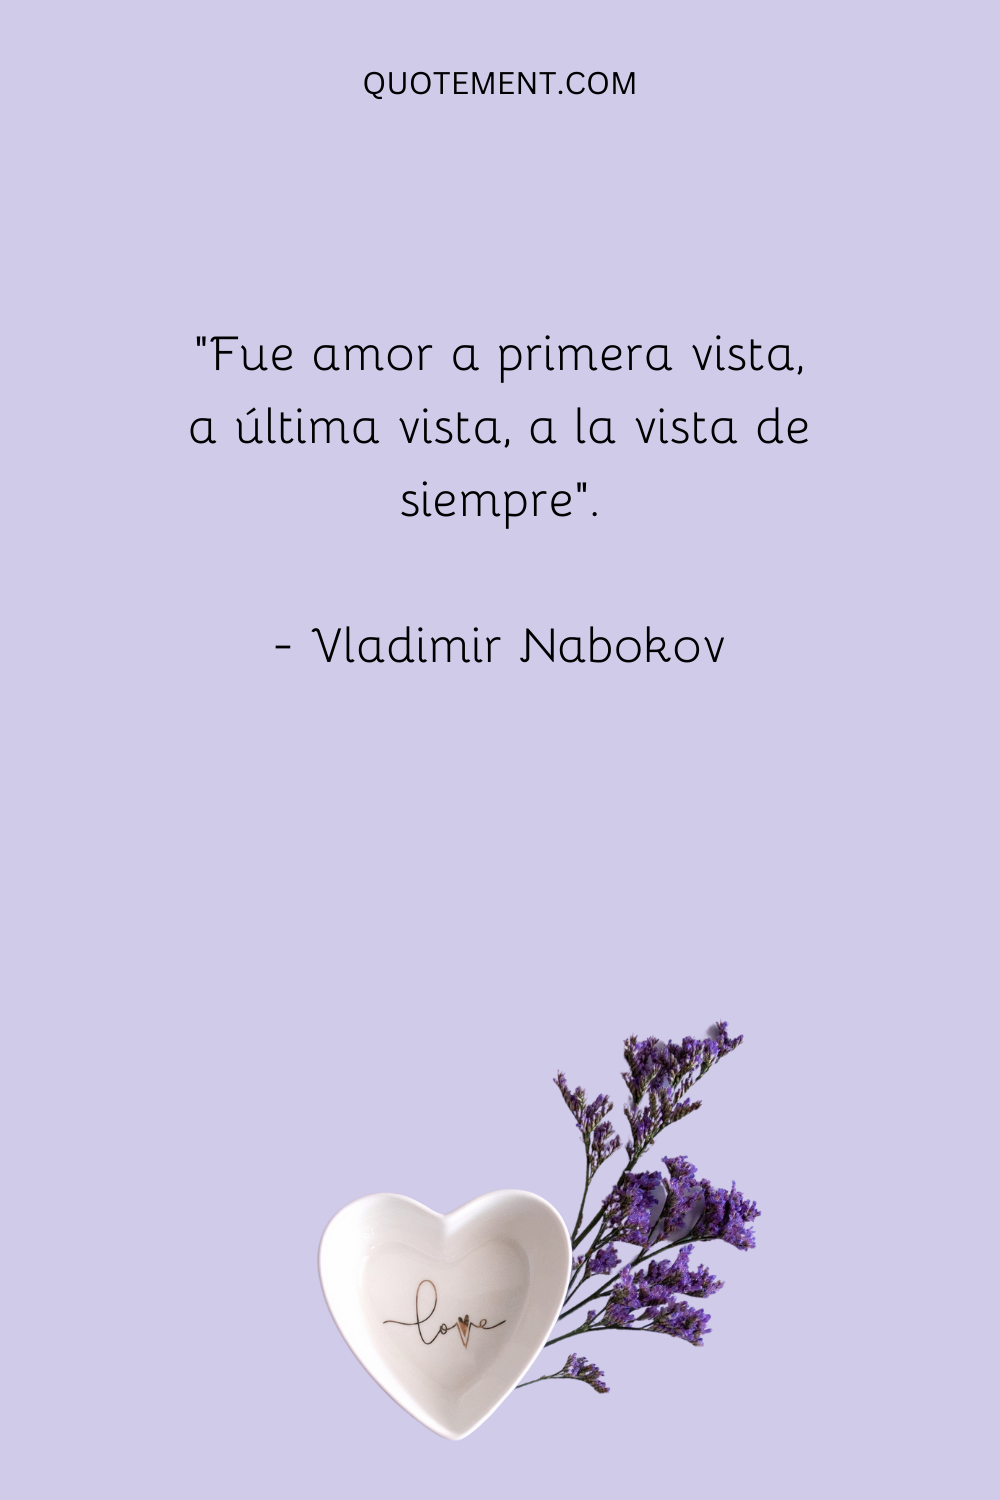 "Fue amor a primera vista, a última vista, a la vista de siempre". - Vladimir Nabokov